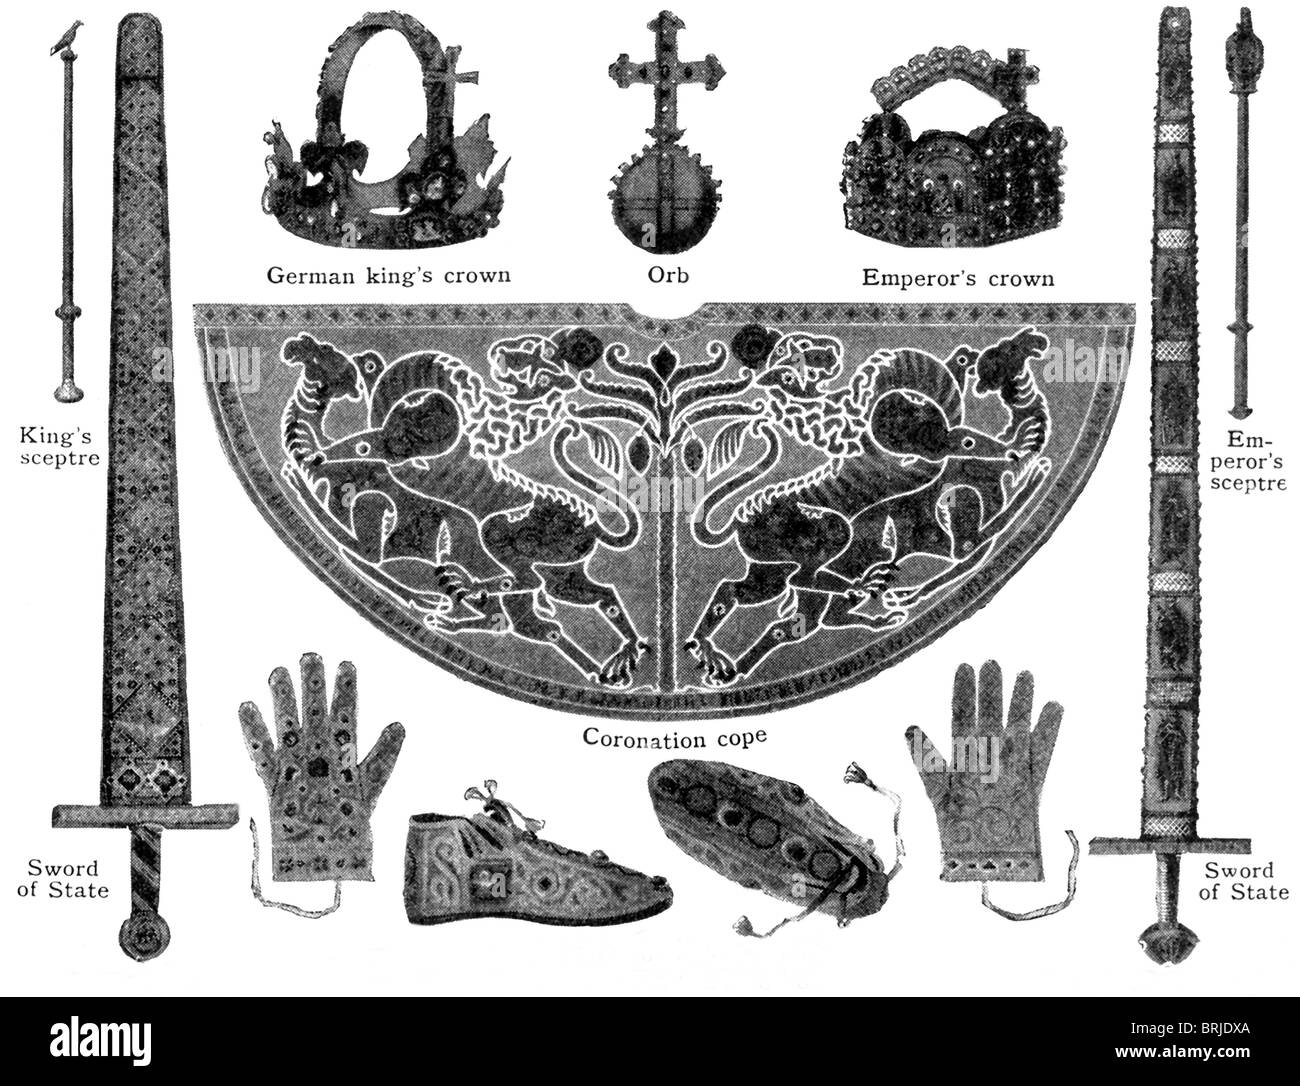 Heiligen Römischen Reiches Deutscher Nation in der späten A.D. 800er. trug die Insignien abgebildet. Stockfoto